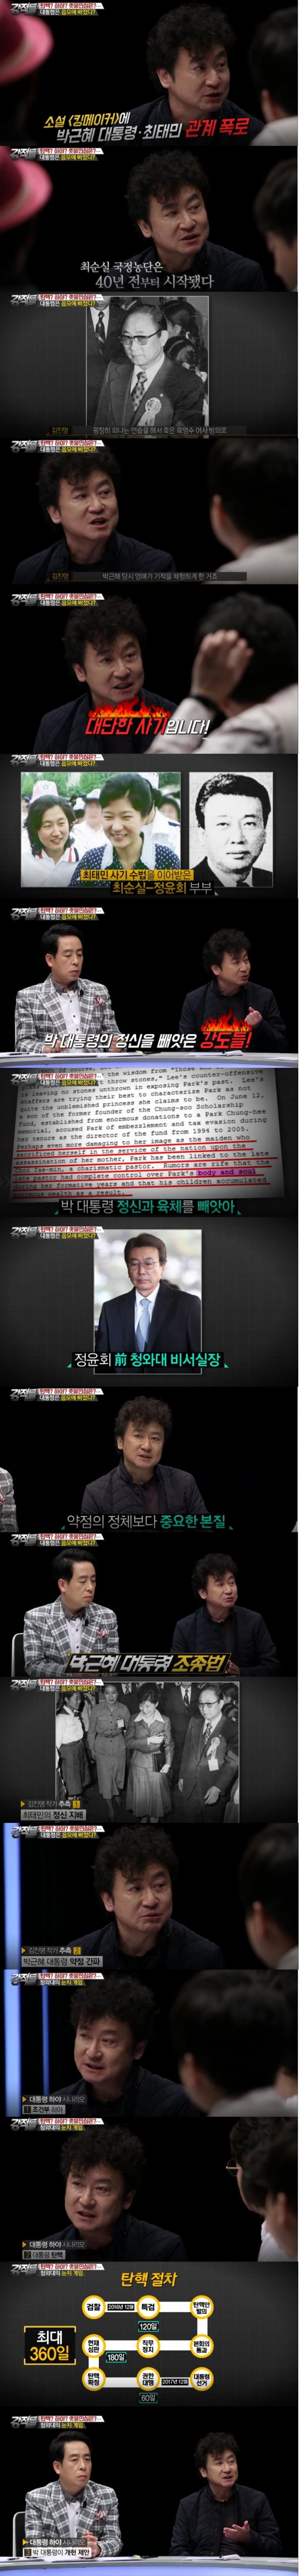 16일밤 방송된 tv조선 '강적들'에서는 김진명 작가가 출연해 박근혜 대통령 하야 시나리오 세 가지를 소개했다./사진=tv조선 방송 캡처